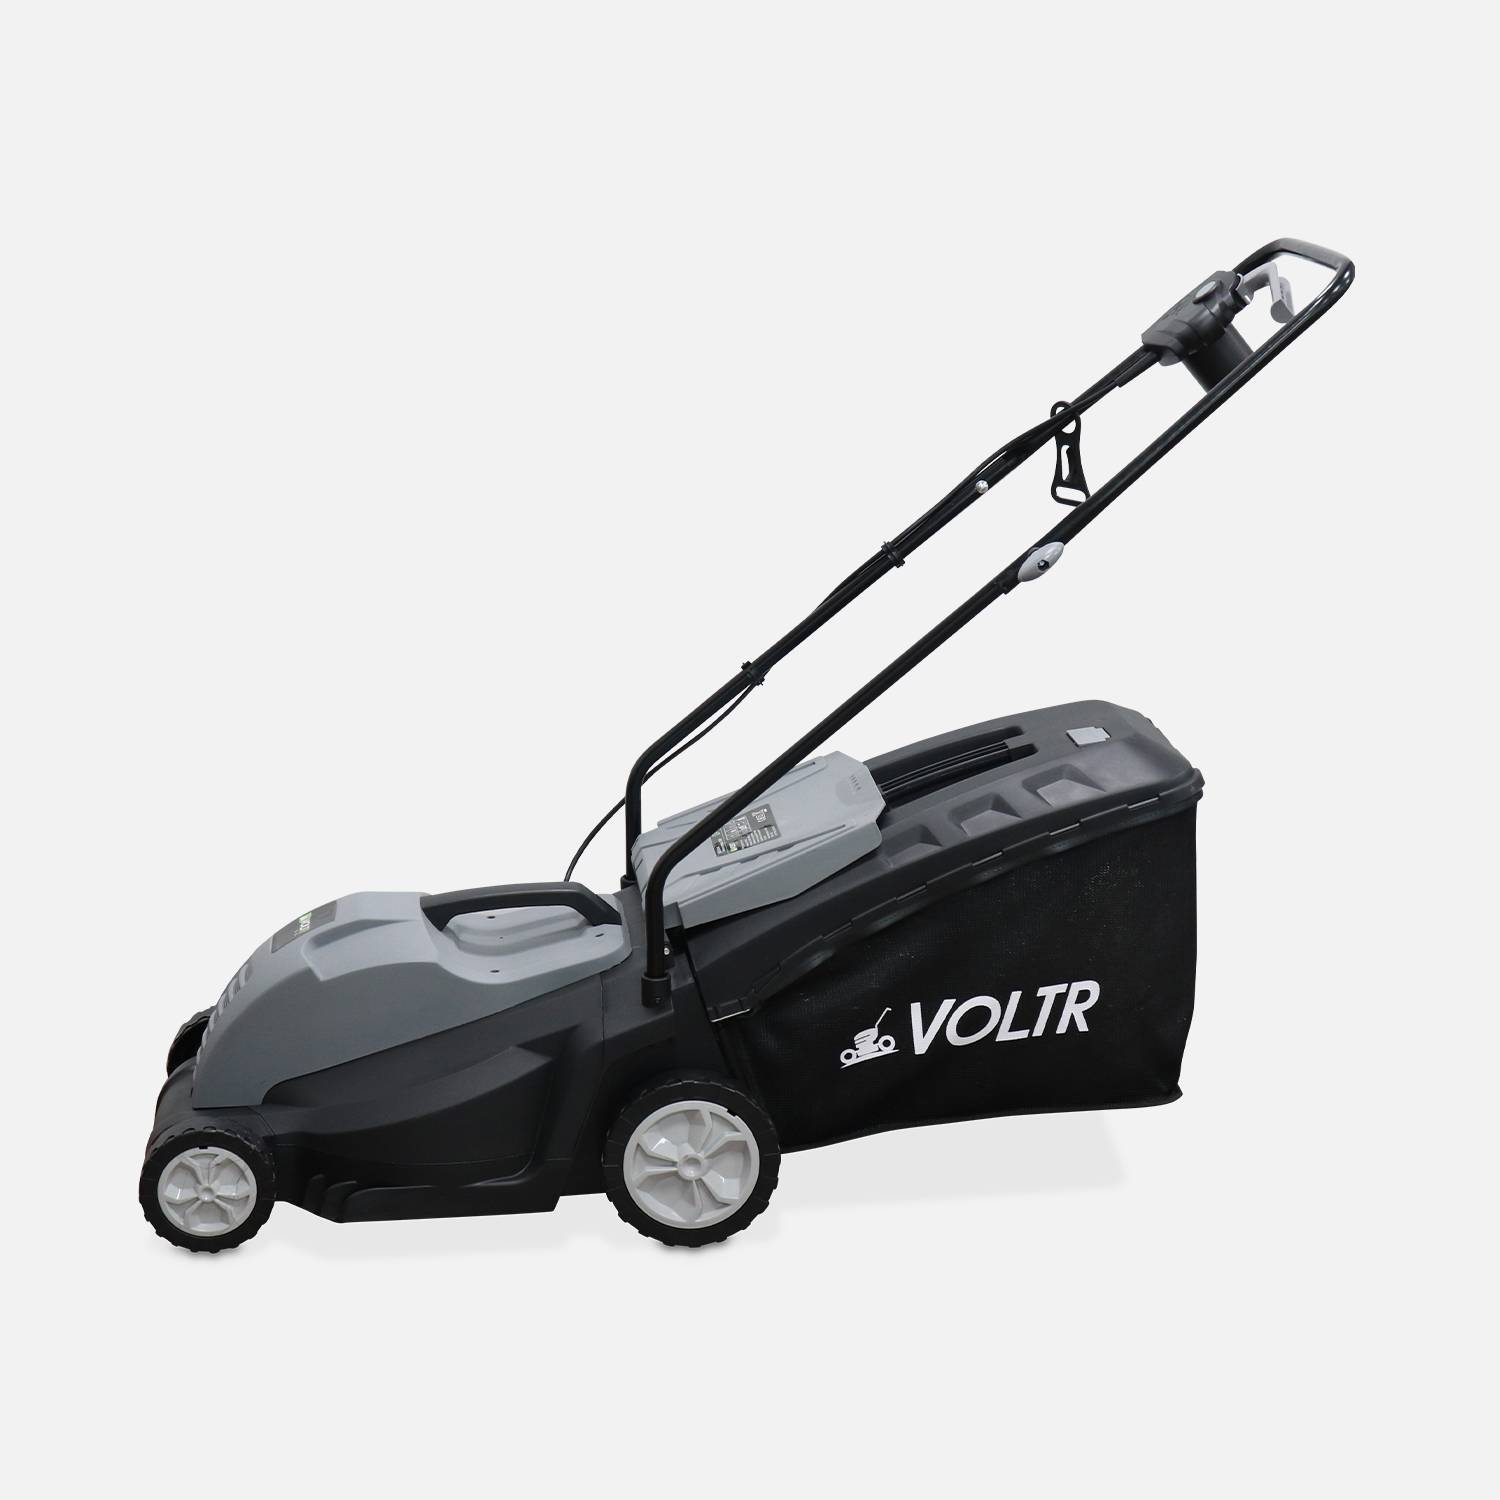 VOLTR - Elektrische grasmaaier 1500W - 50L grasopvangbak, maaidiameter 36cm, compact en handig Photo3